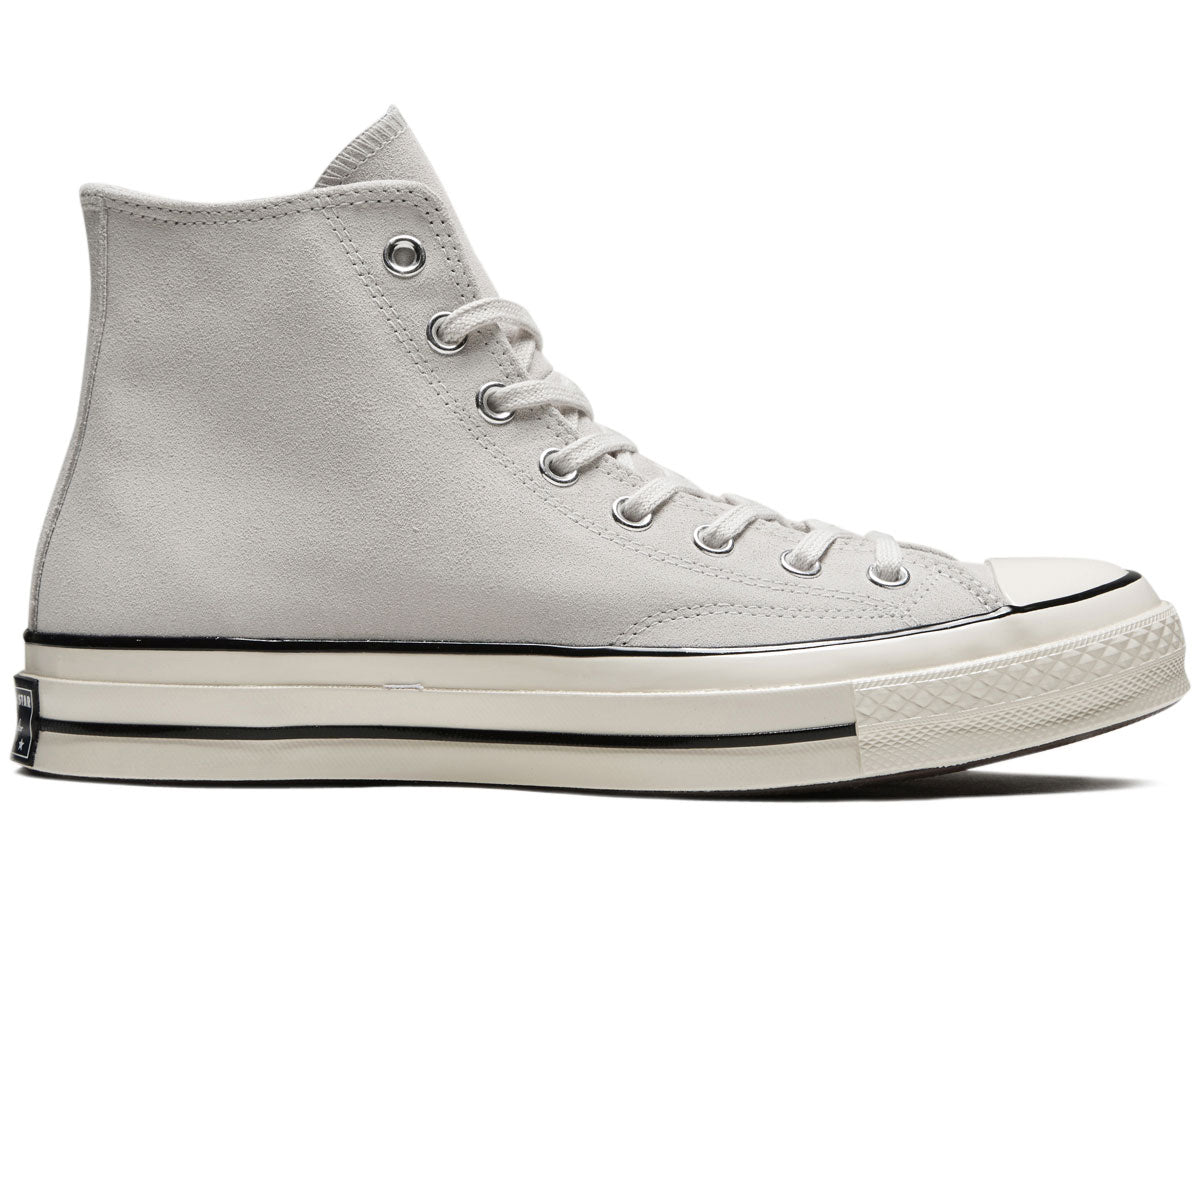 Converse Chuck 70 Suede Hi Shoes - Pale Putty/Egret/Black